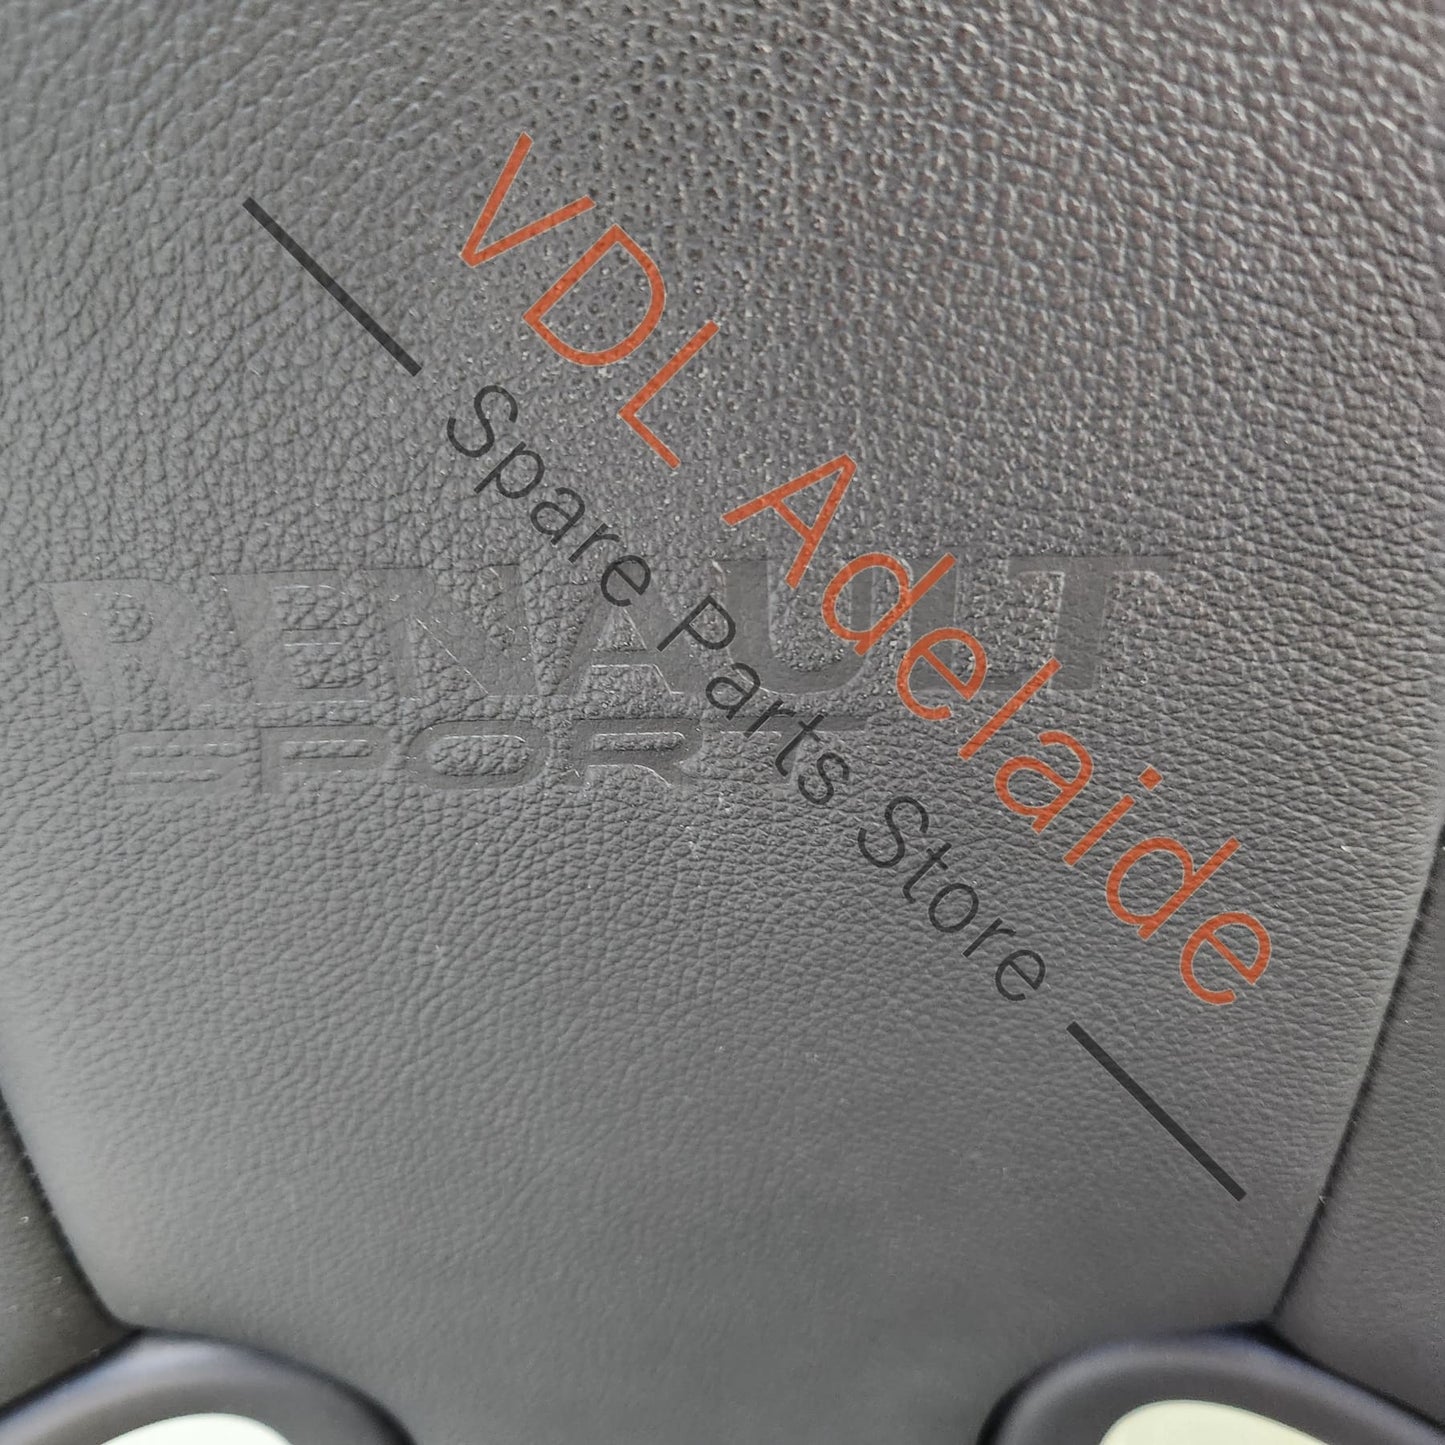  Renault Megane MK3 III Black Leather Recaro Seat Set RS250 RS265 RS275